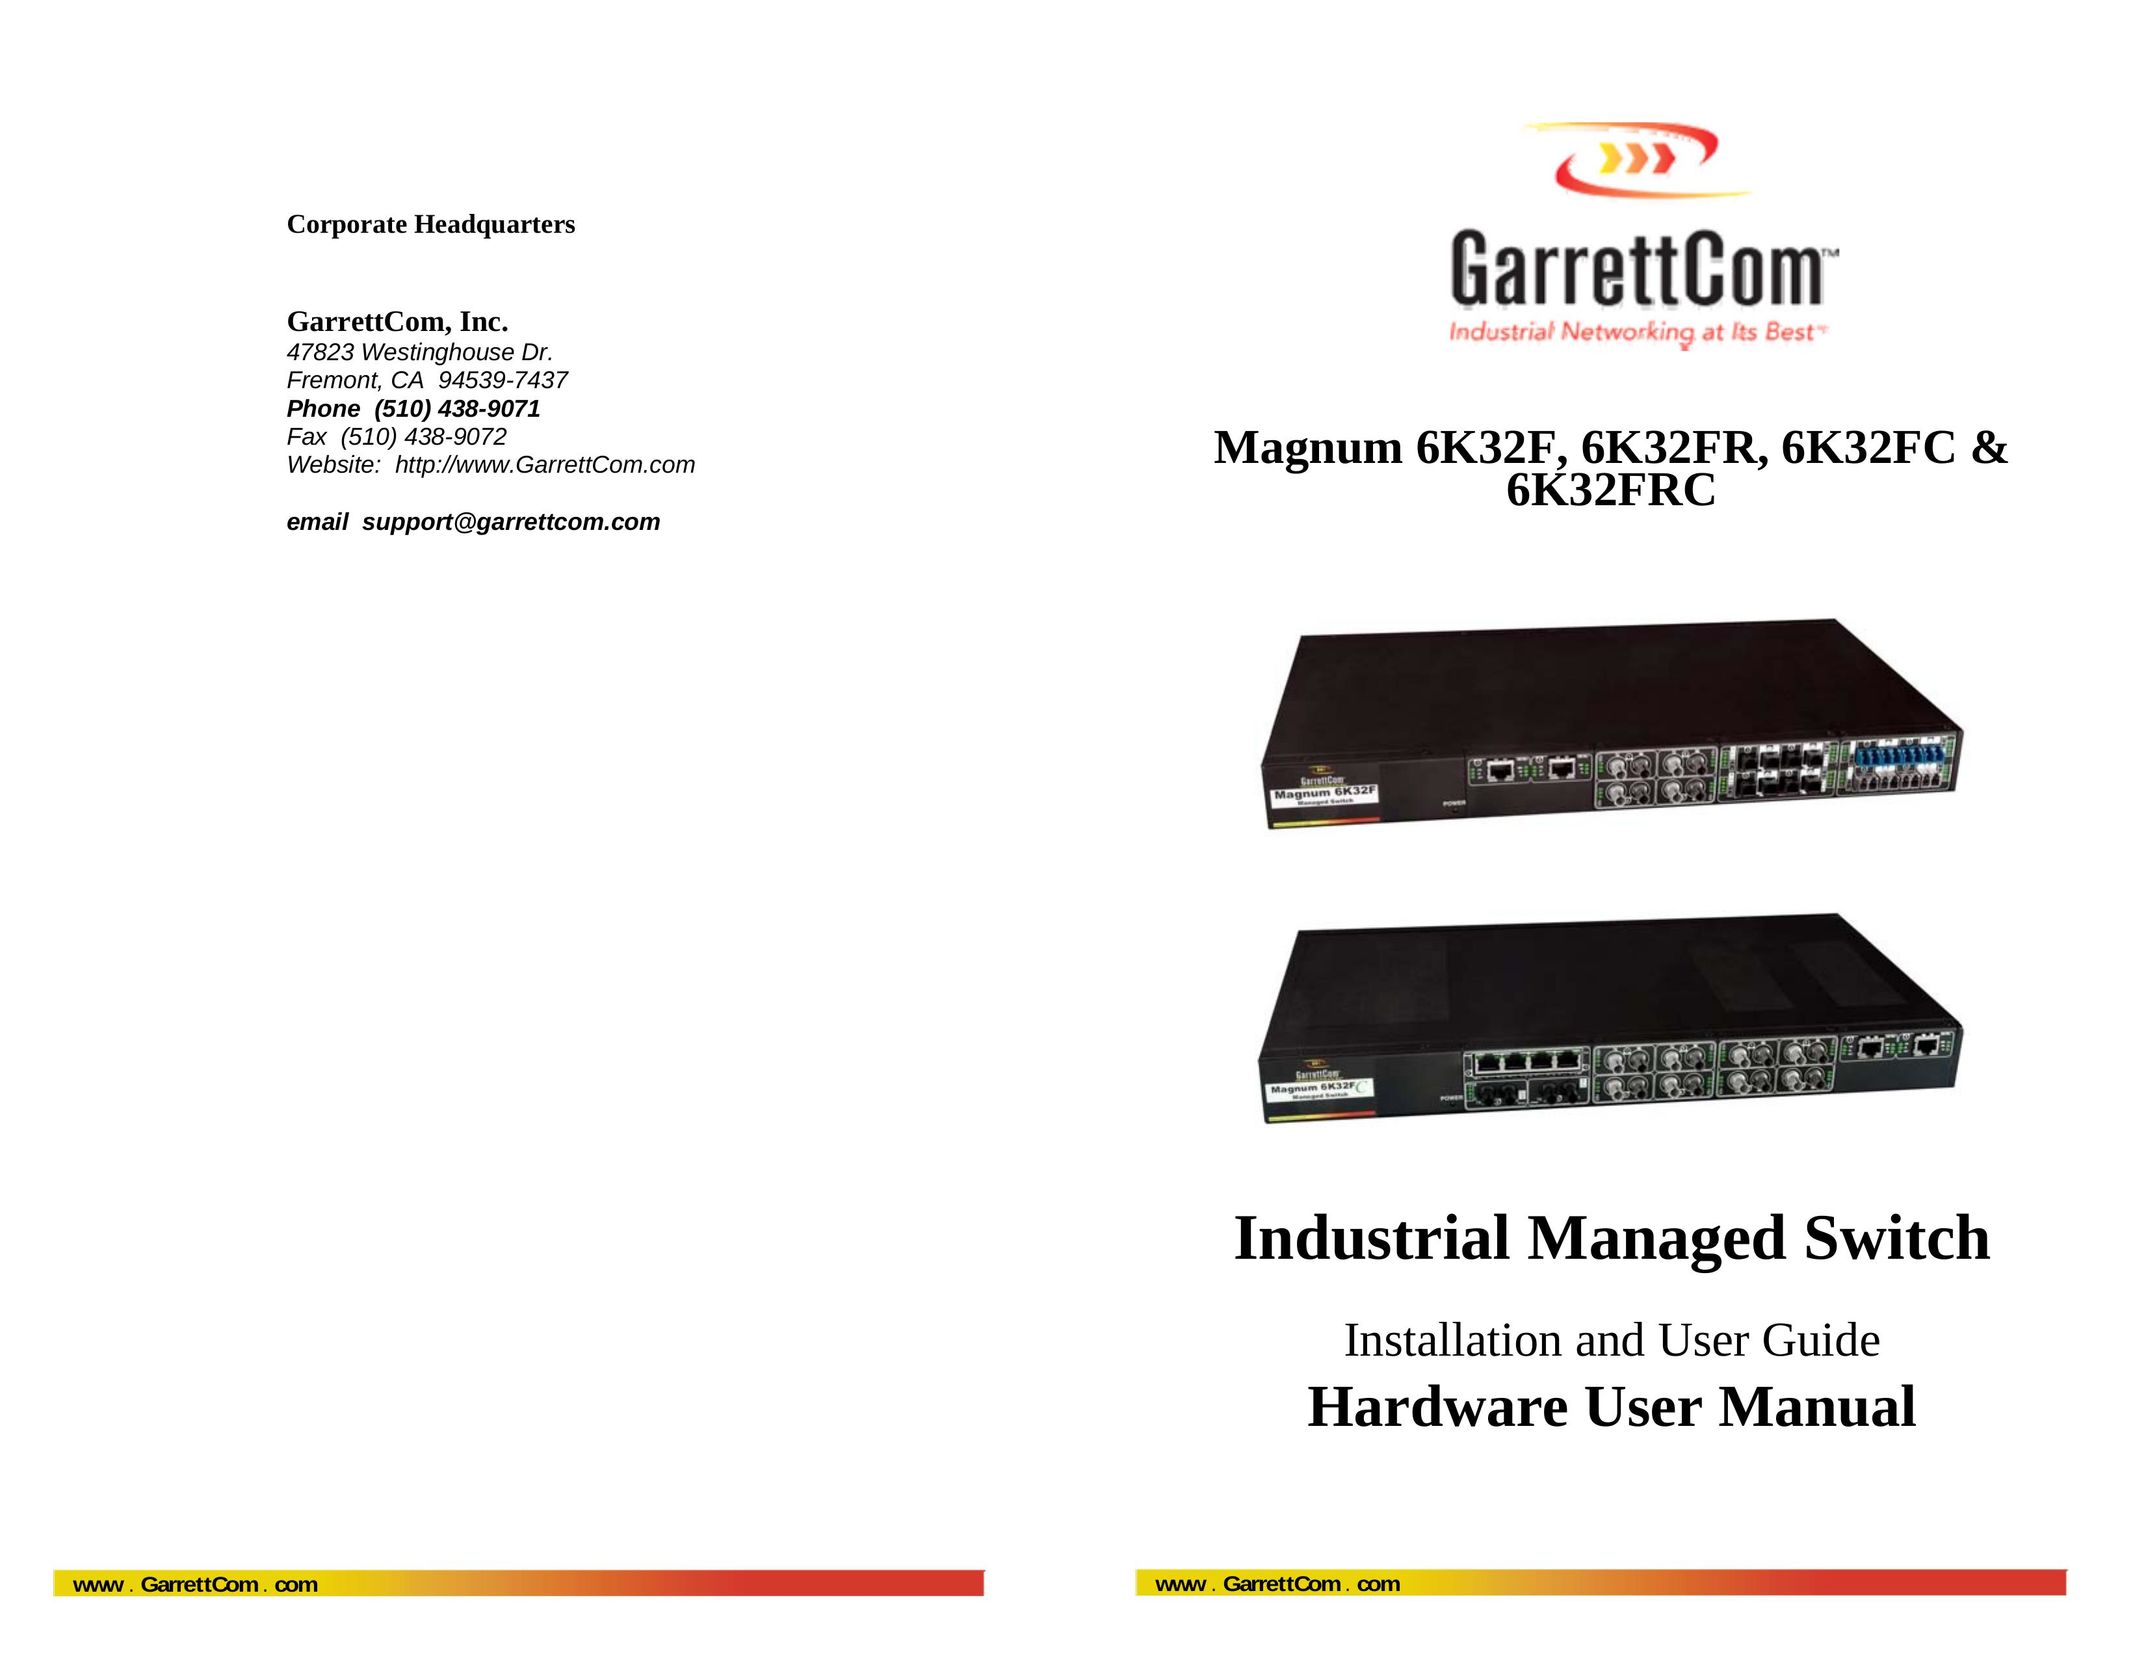 GarrettCom 6K32FR Network Router User Manual